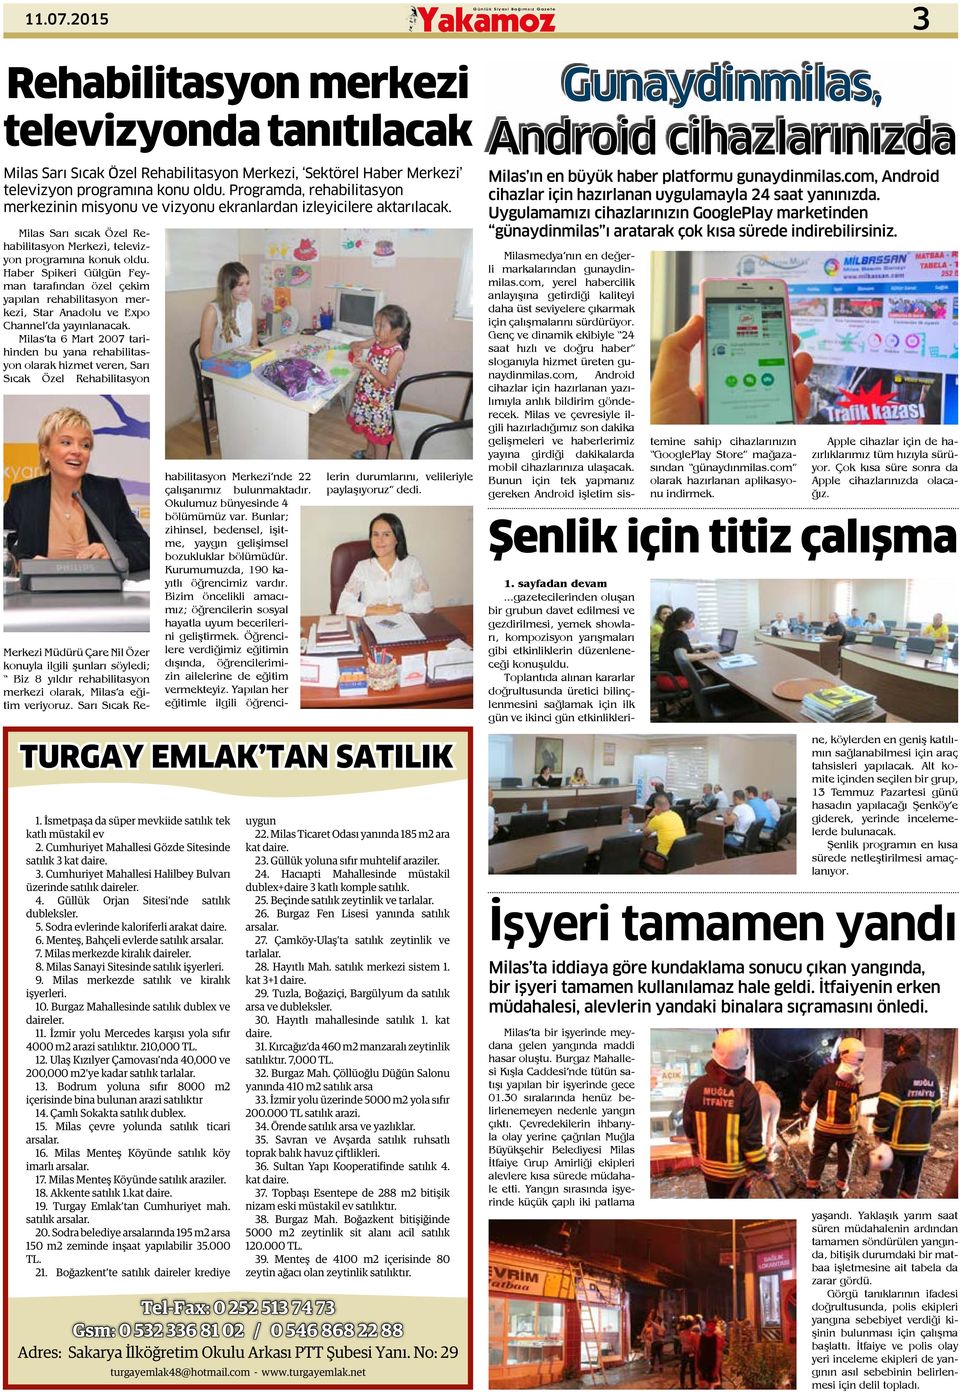 Haber Spikeri Gülgün Feyman tarafından özel çekim yapılan rehabilitasyon merkezi, Star Anadolu ve Expo Channel da yayınlanacak.